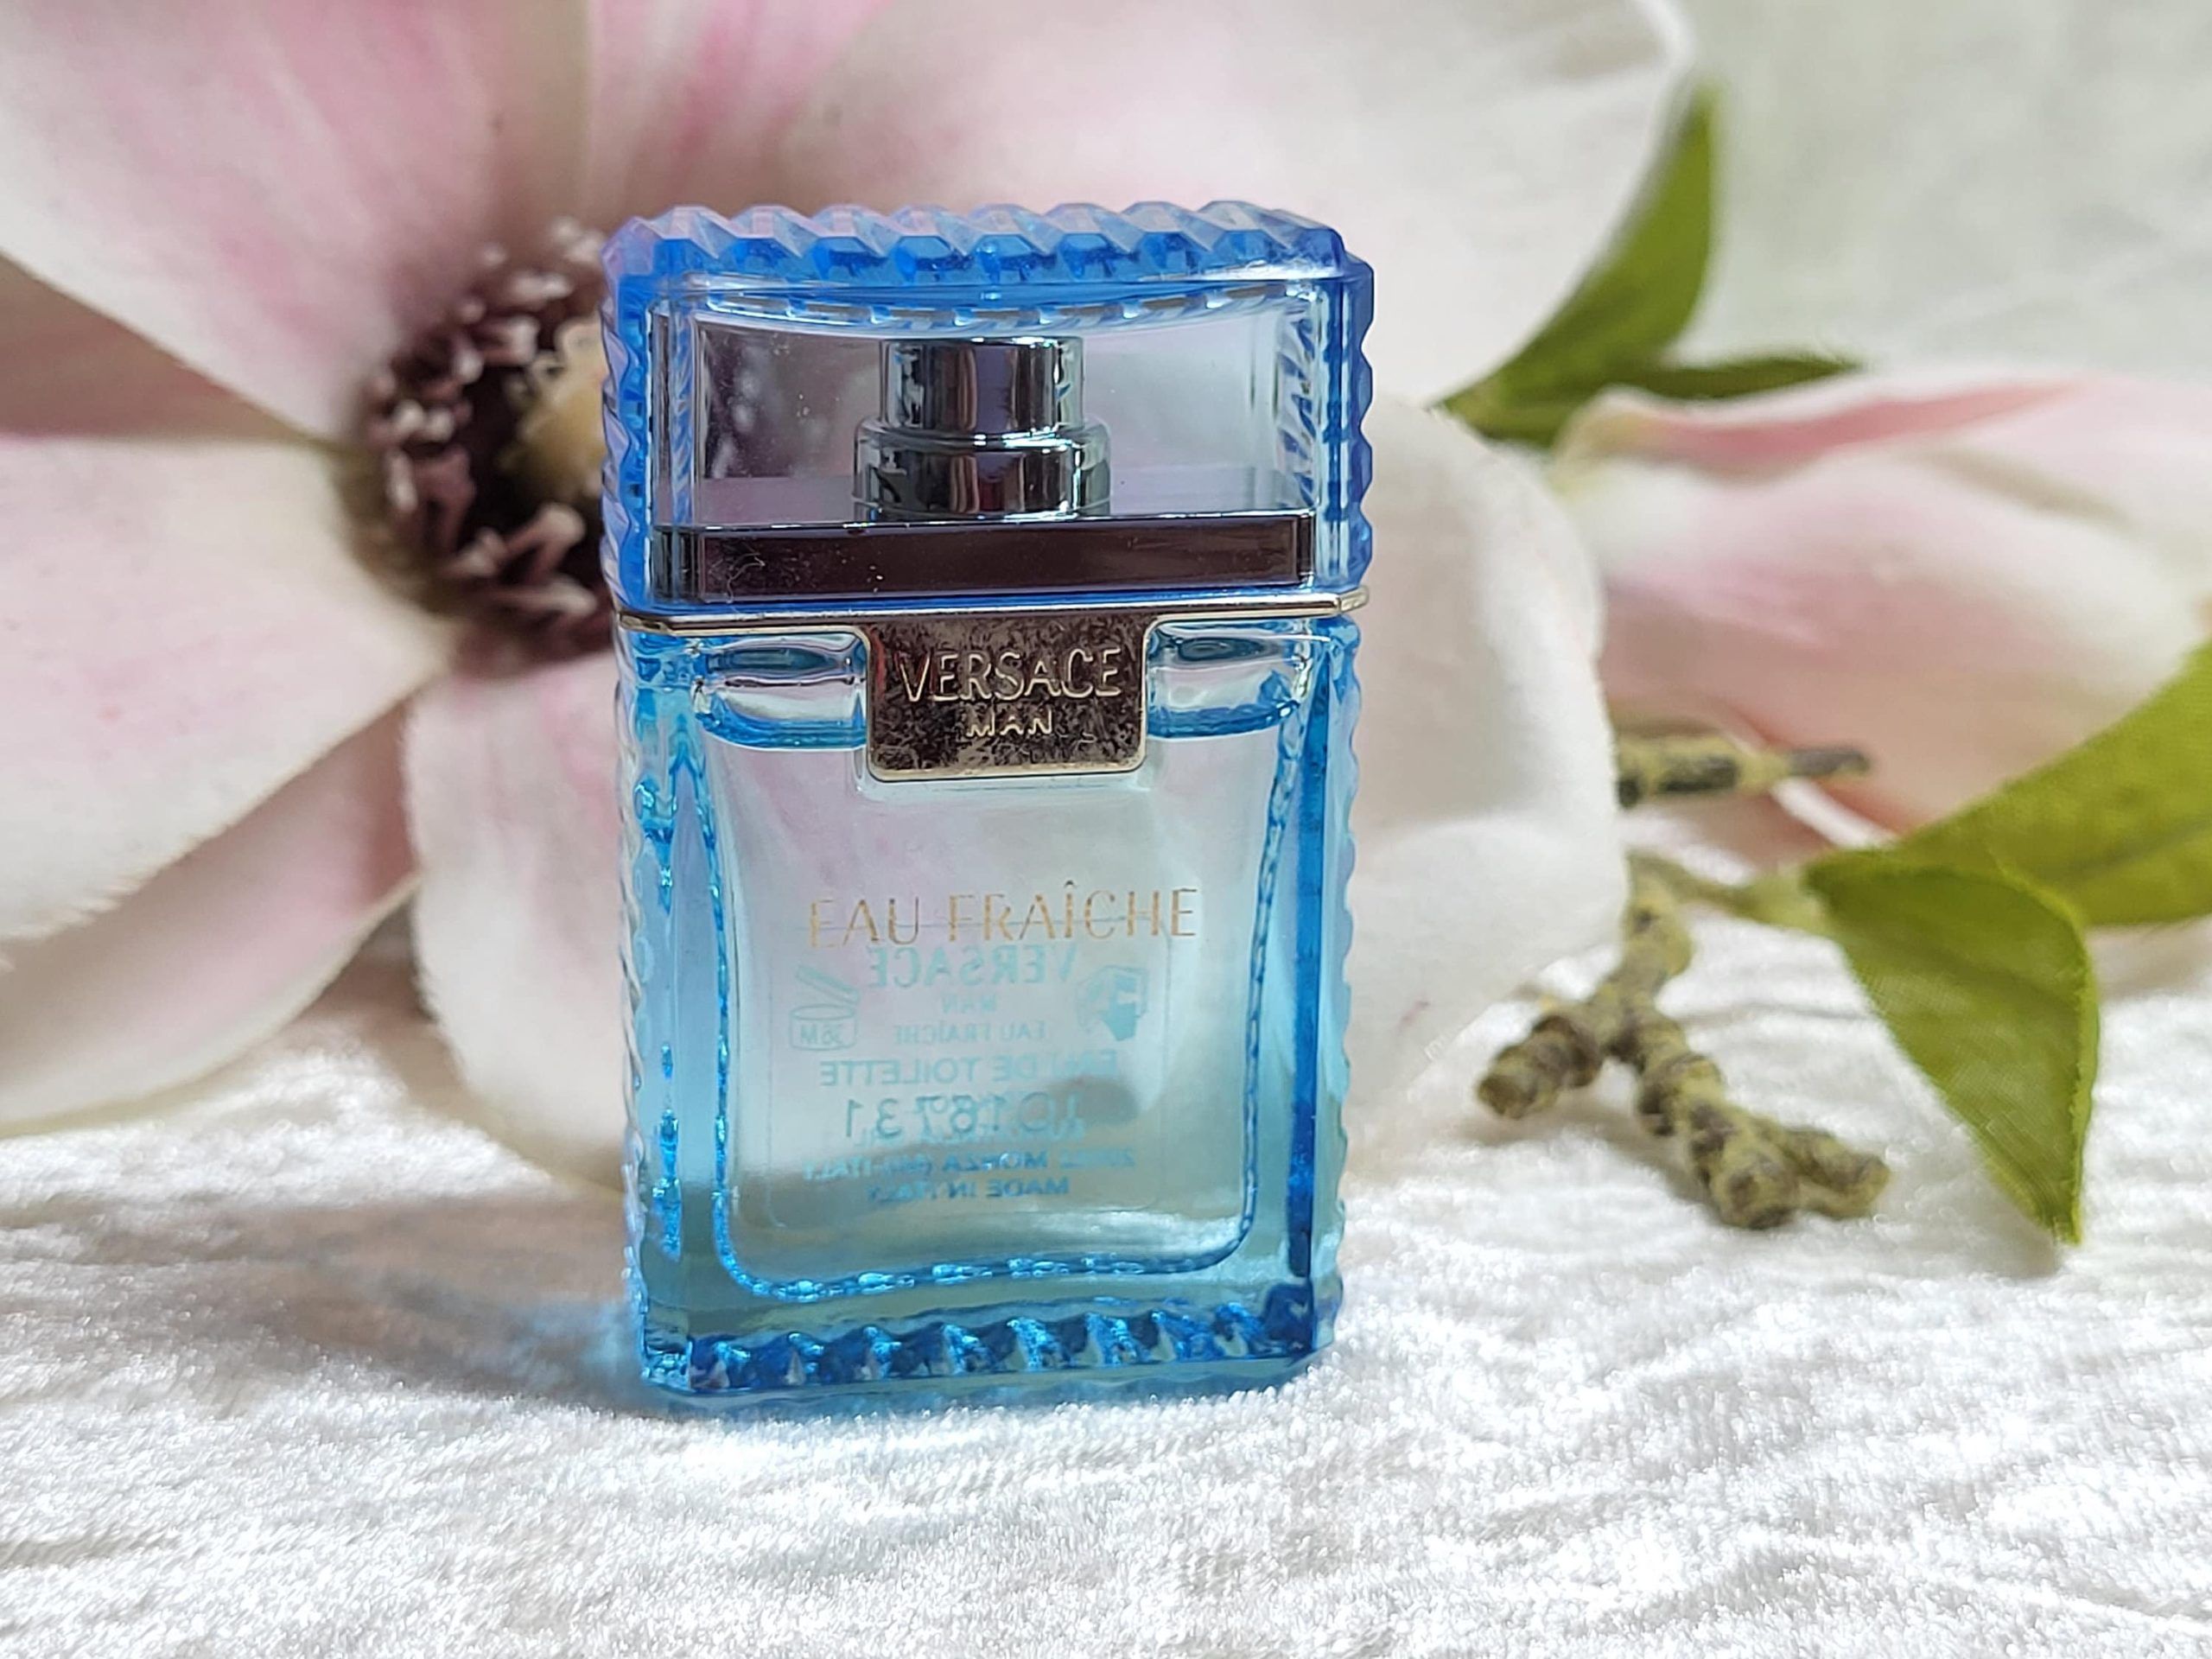 Versace Eau Fraiche For Men Eau De Toilette 5ml Miniature at Ratans Online Shop - Perfumes Wholesale and Retailer Fragrance 2